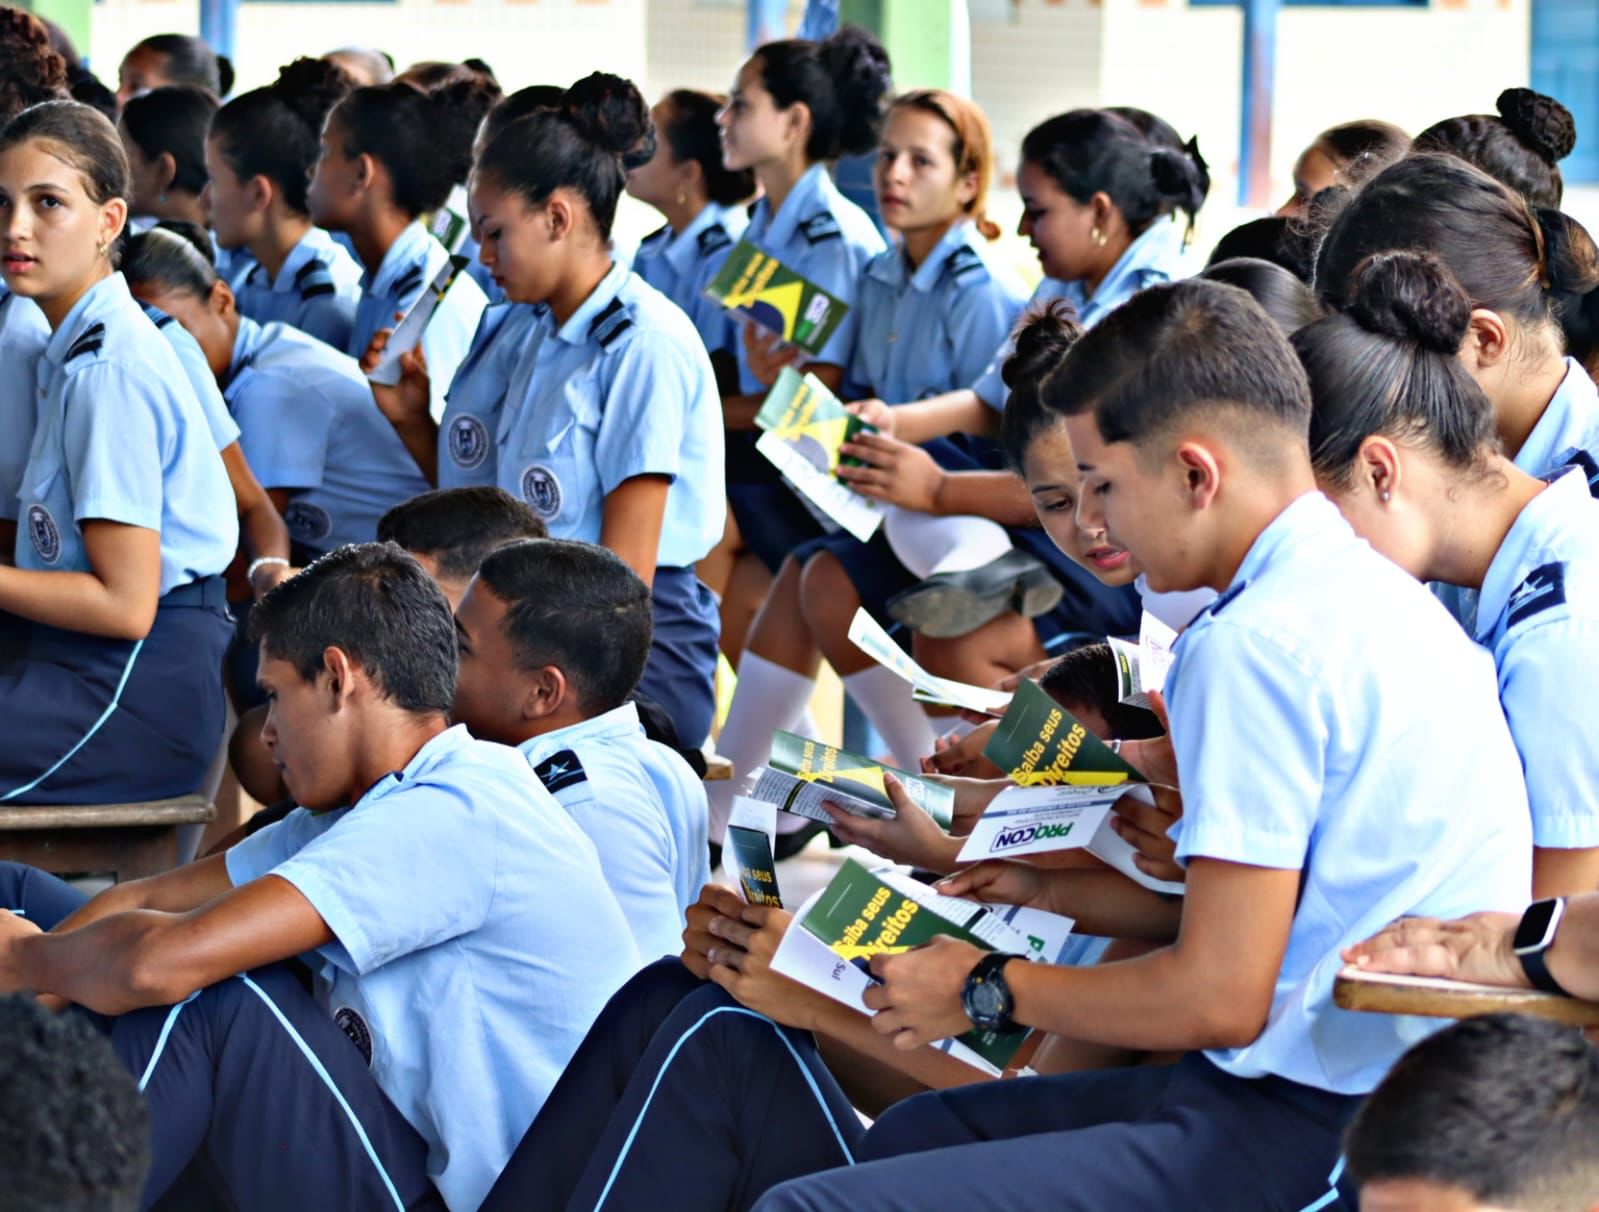 Procon realiza ação educativa na Escola Estadual Cívico Militar Madre Adelgundes, em Cruzeiro do Sul